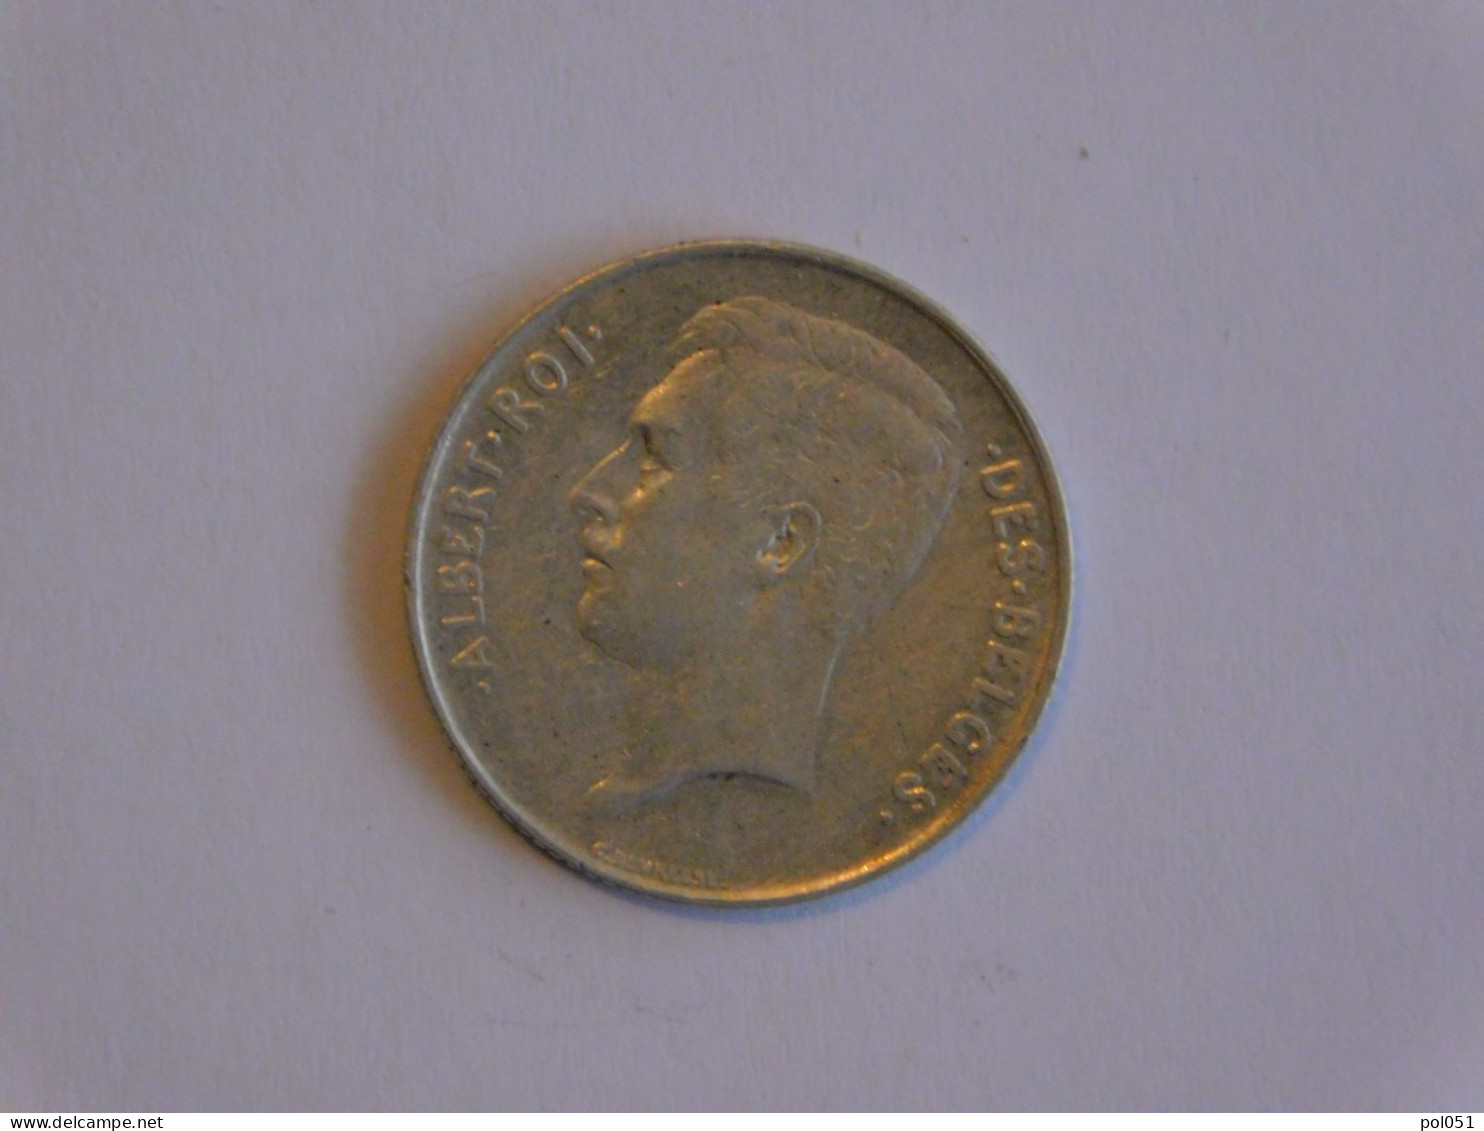 Belgique 1 Franc 1912 - Silver, Argent - 1 Franc